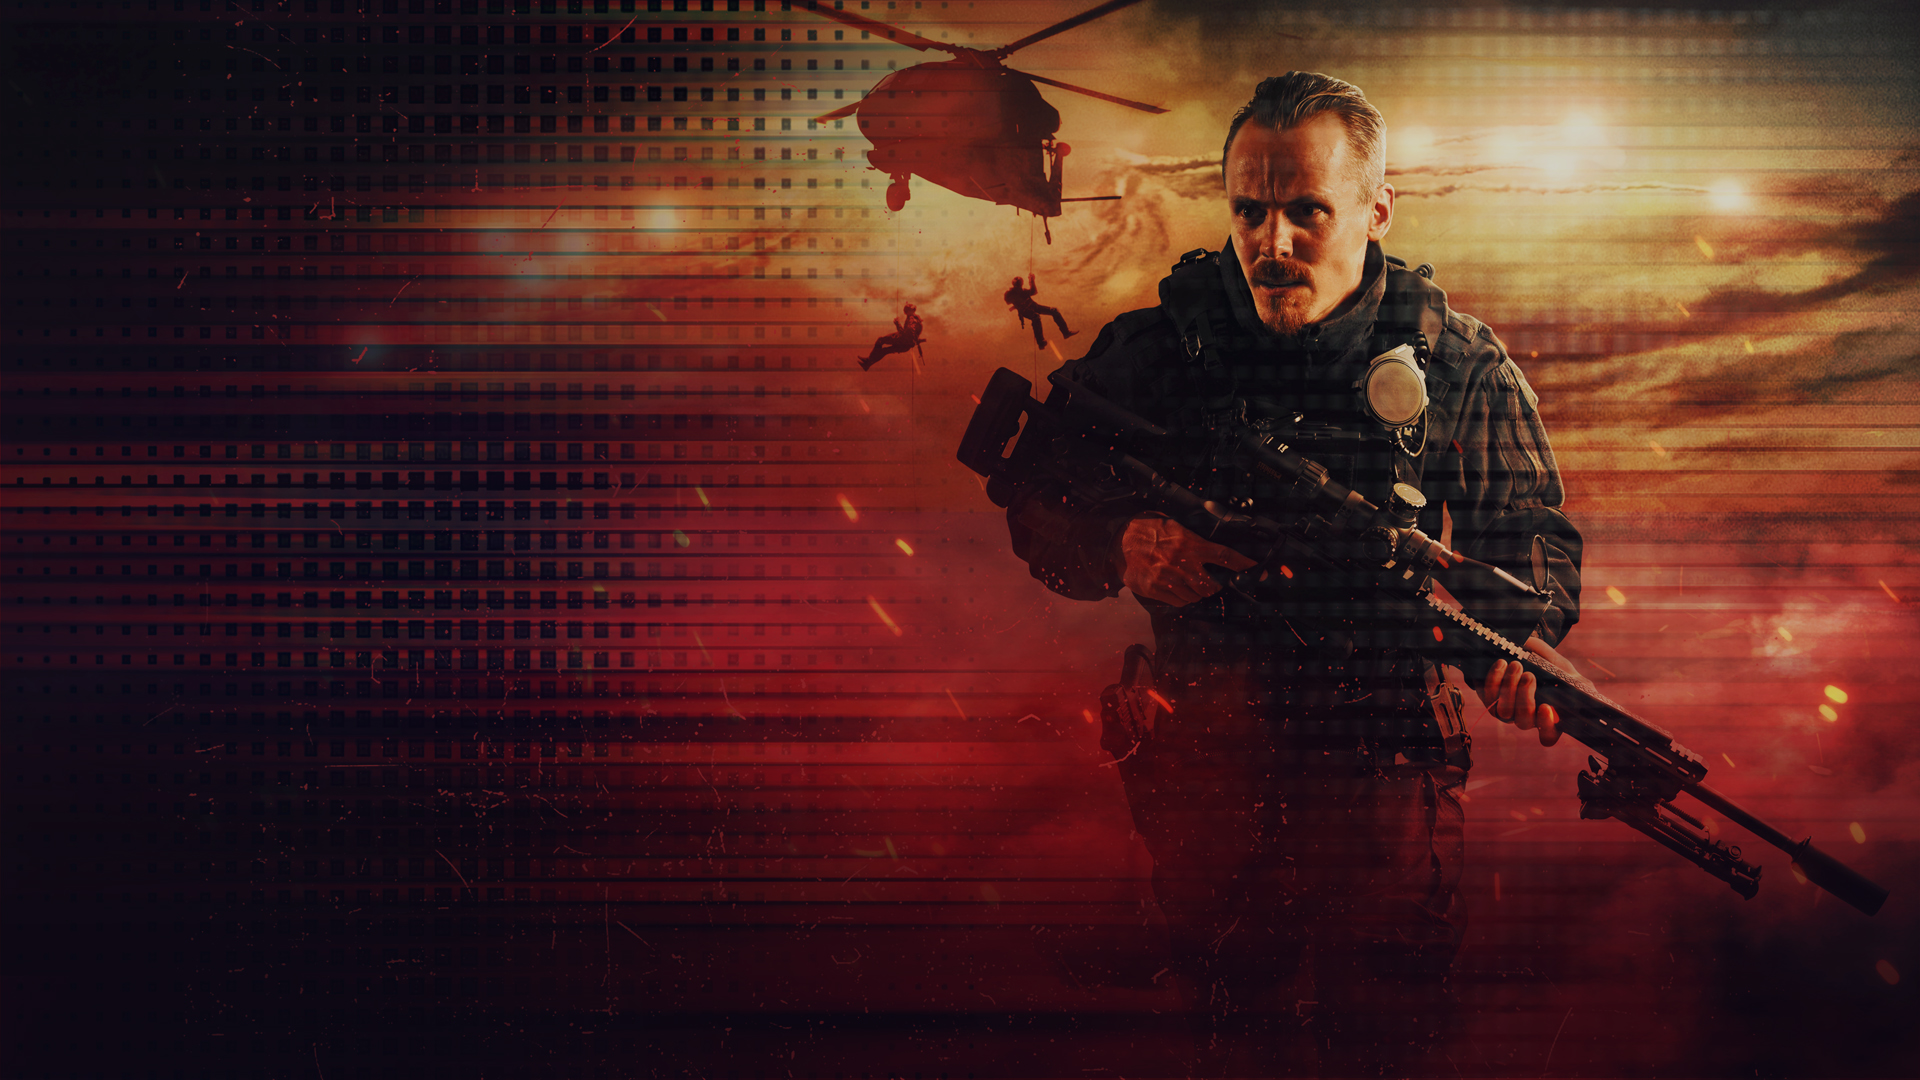 Kuvassa on Jasper Pääkkönen ase kädessä ja militaristisessa asussa.  Kuvan sävy on puna-musta. Taustalla näkyy helikopteri.